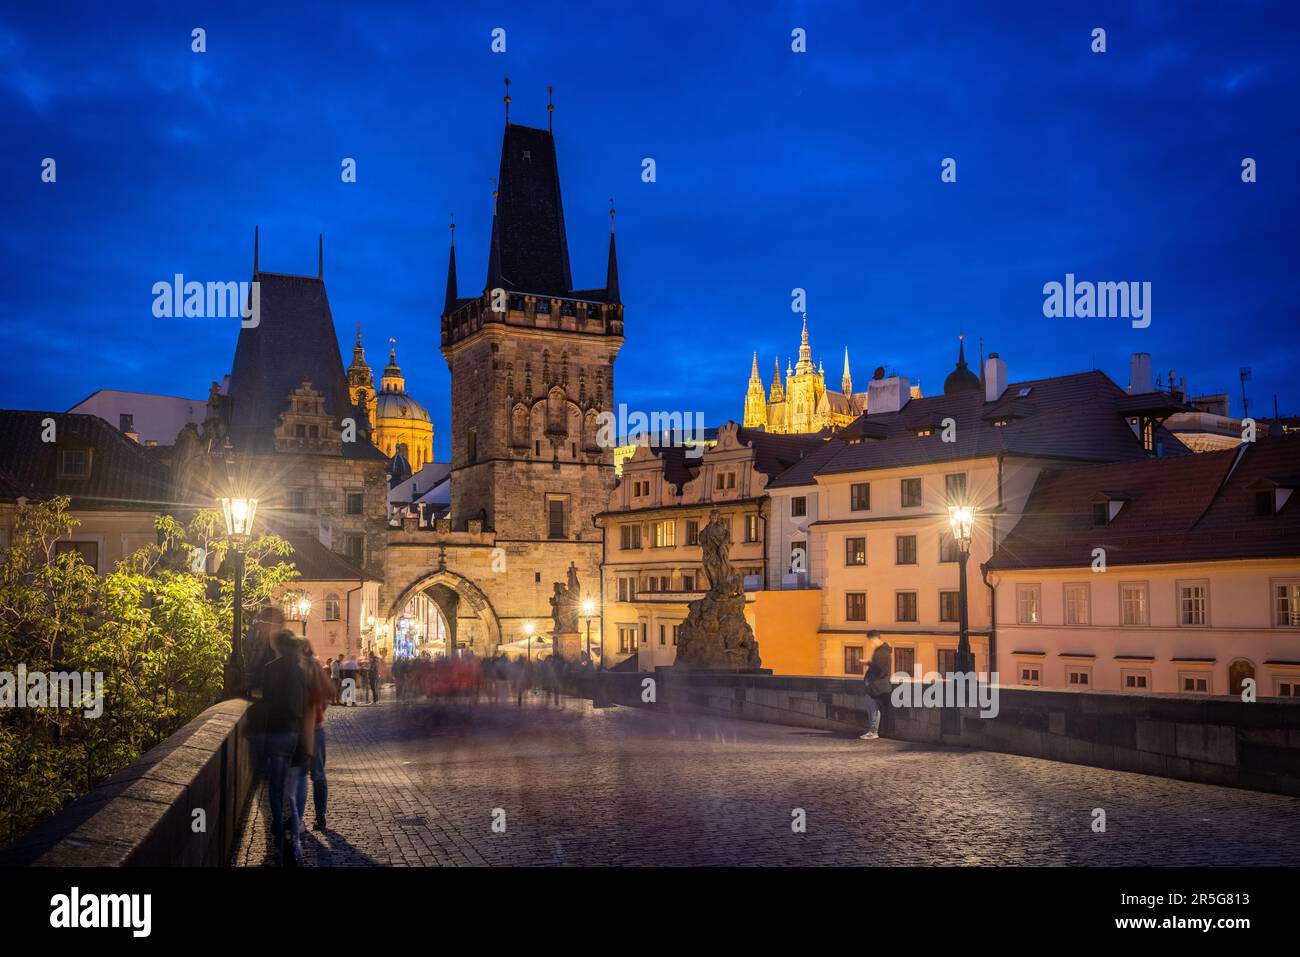 Prague: Vue sur la région de Mala Strana avec le pont ouest de la tour du pont charles, St. Église Nicholas et Saint-Nicolas Cathédrale de Vitus pendant l'heure bleue - passe Banque D'Images